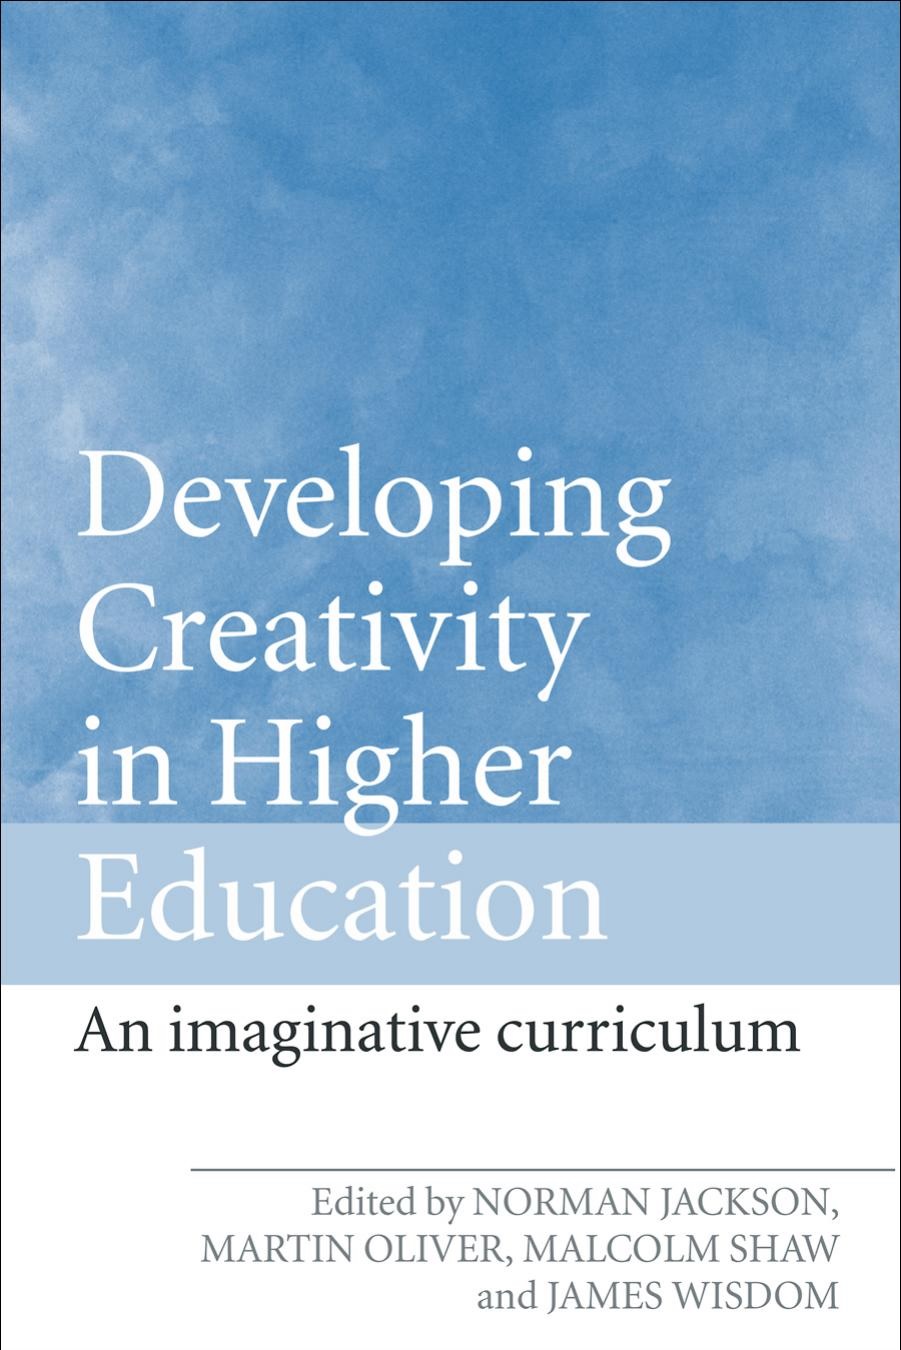 پرورش خلاقیت در آموزش عالی: برنامه درسی تخیلی (جکسون و همکاران، ۲۰۰۶)